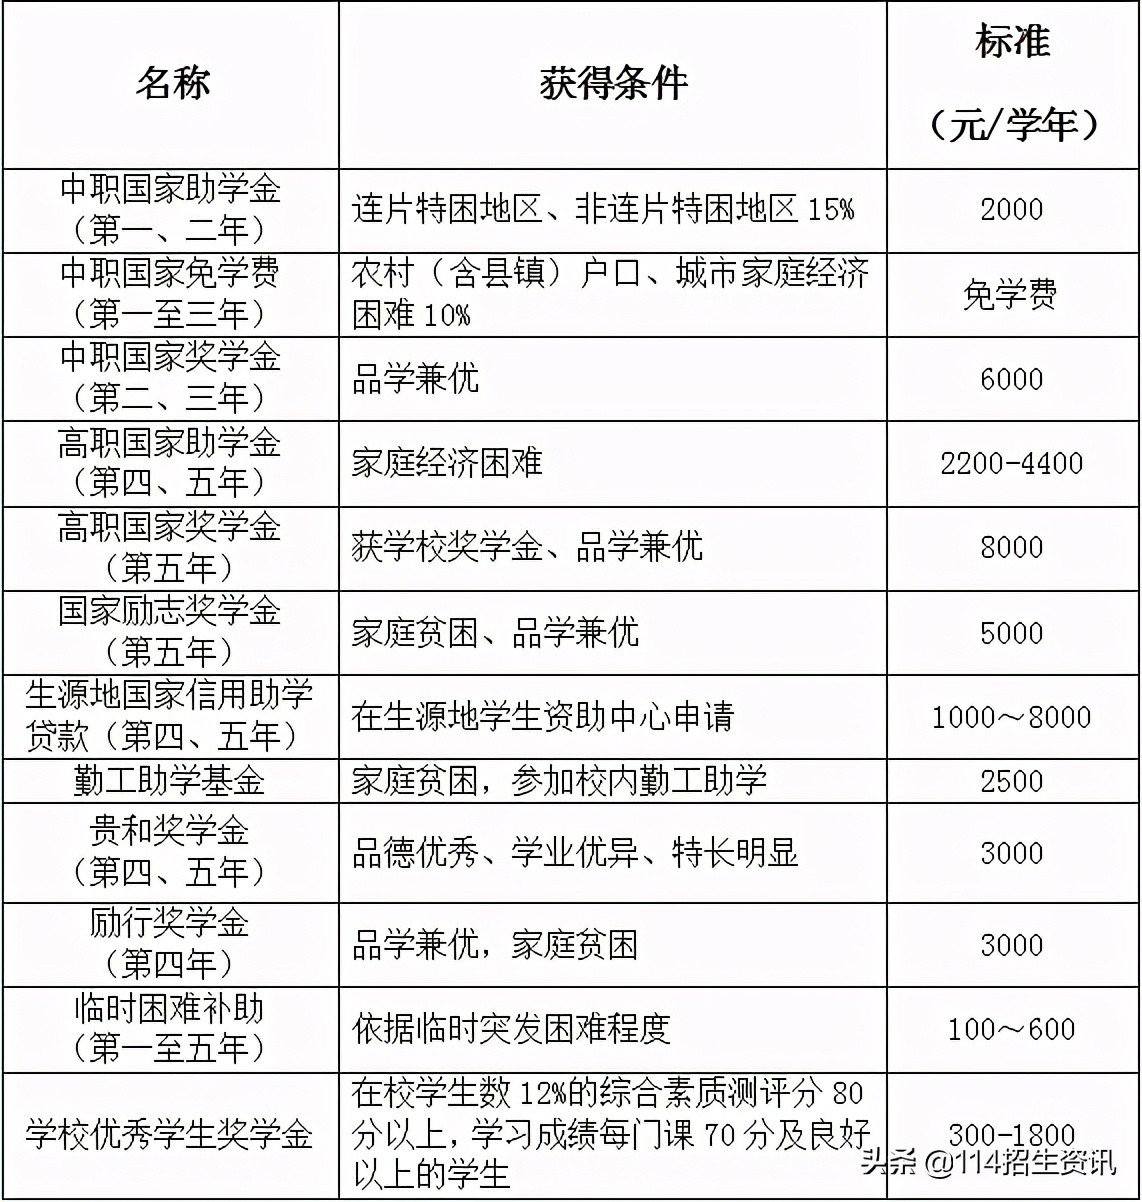 ​招生简章 | 2021年江西应用技术职业学院五年制高职